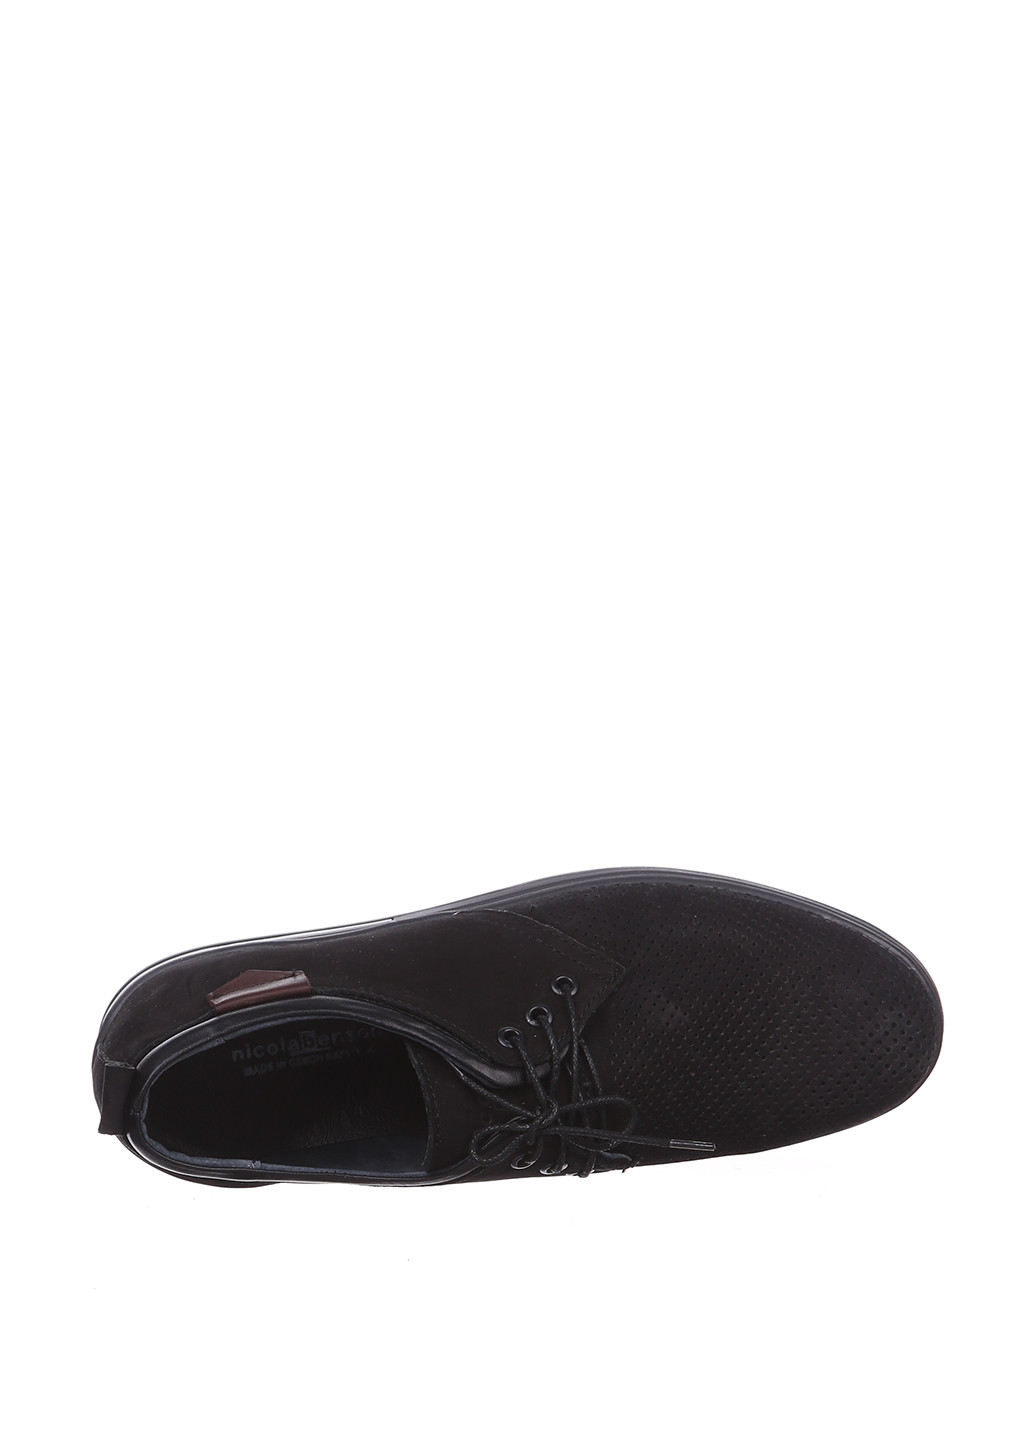 Черные кэжуал туфли Nicola Benson на шнурках